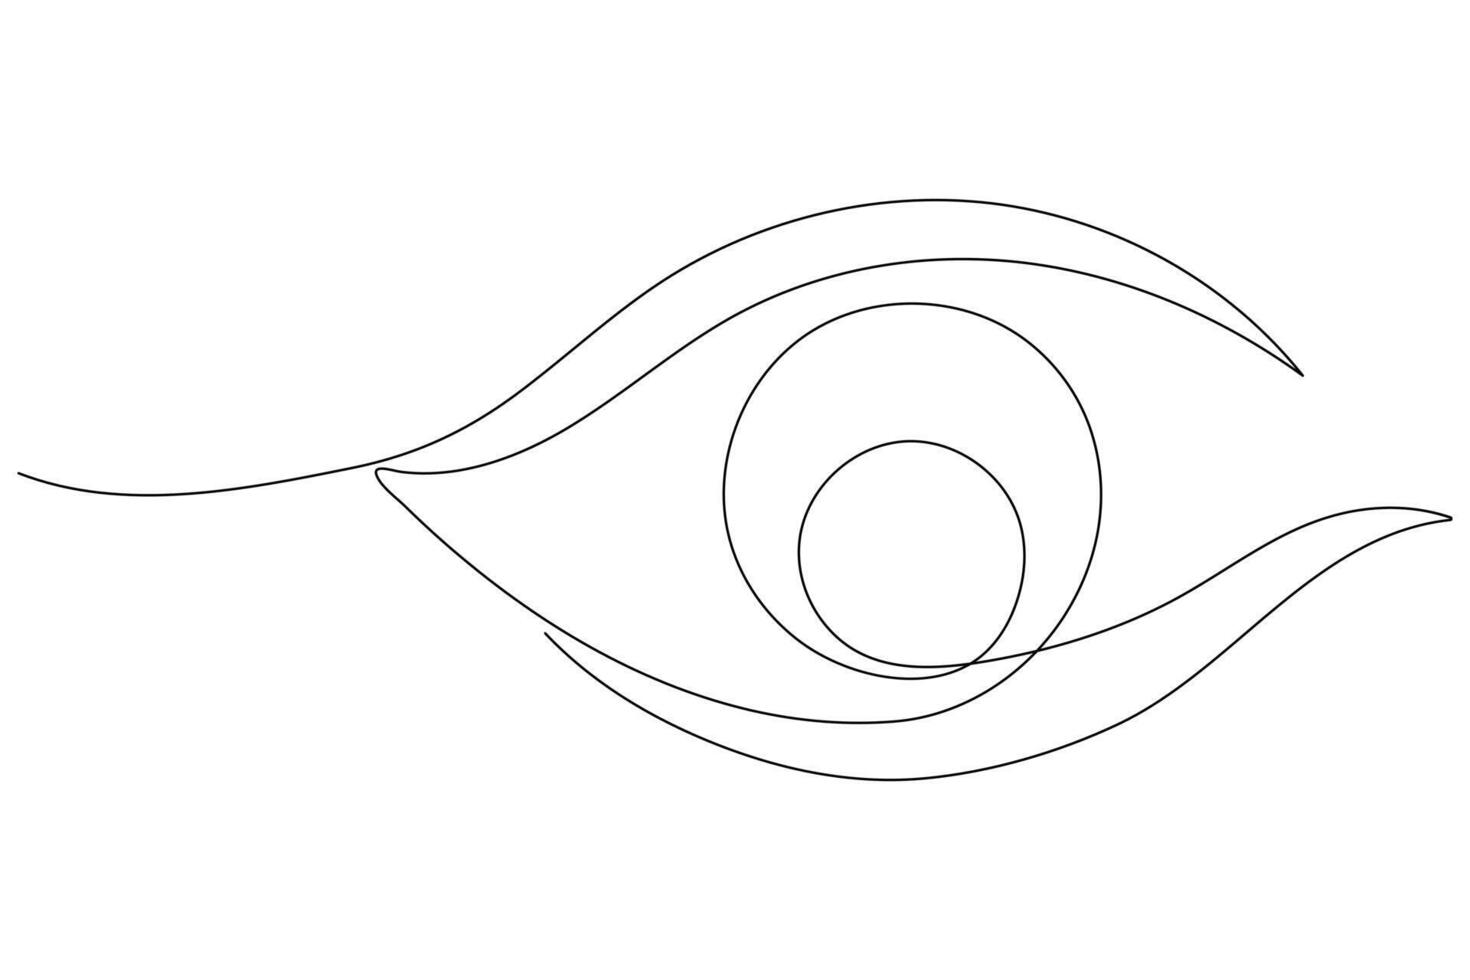 oog symbool in doorlopend een lijn kunst tekening van menselijk oog teken schets vector illustratie